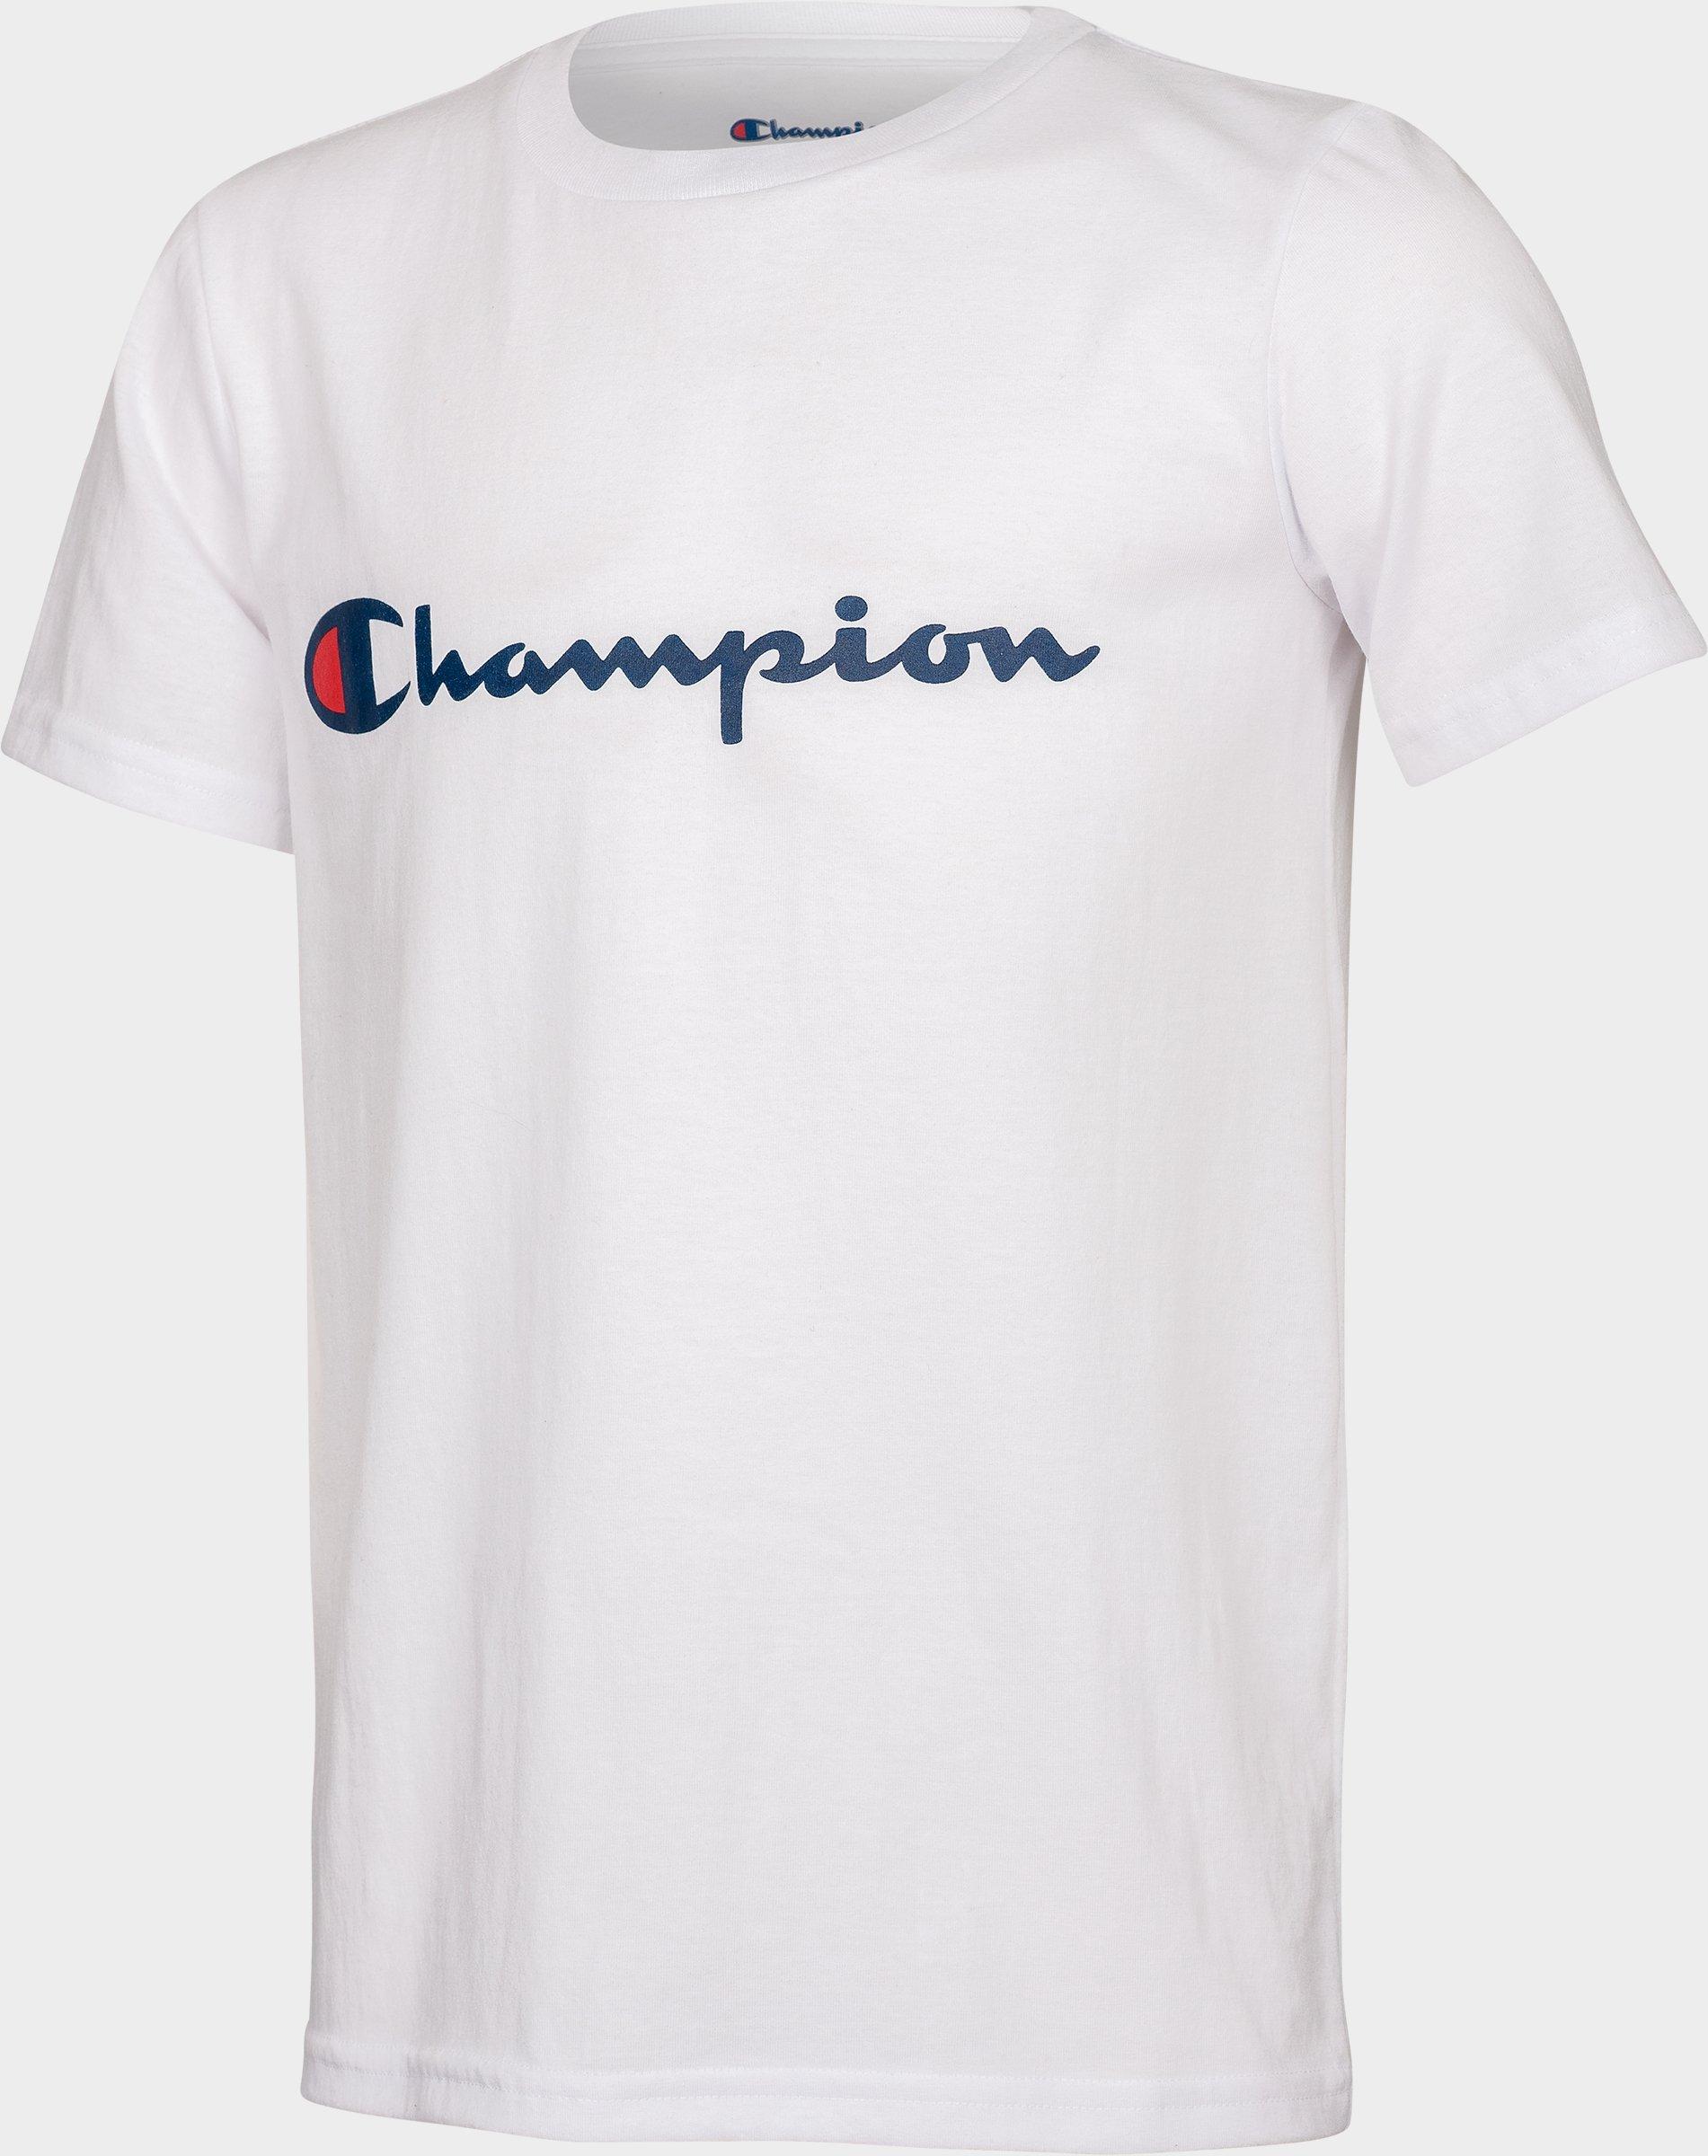 Boys' Champion Script T-Shirt| JD Sports